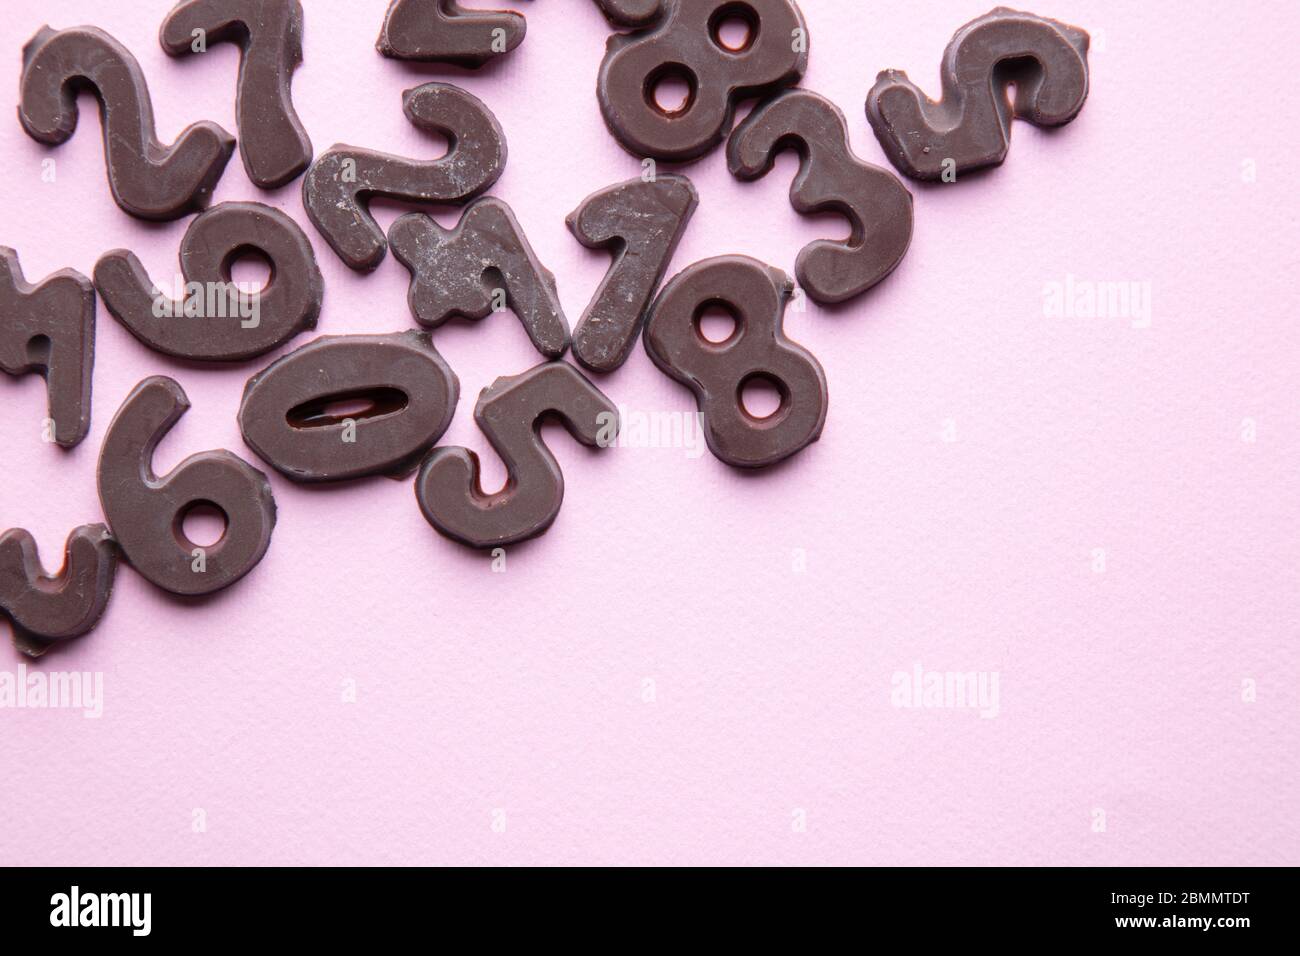 Ein kunstvoller Studiofoto mit Schokoladennummern vor einem pastellrosa Hintergrund Stockfoto